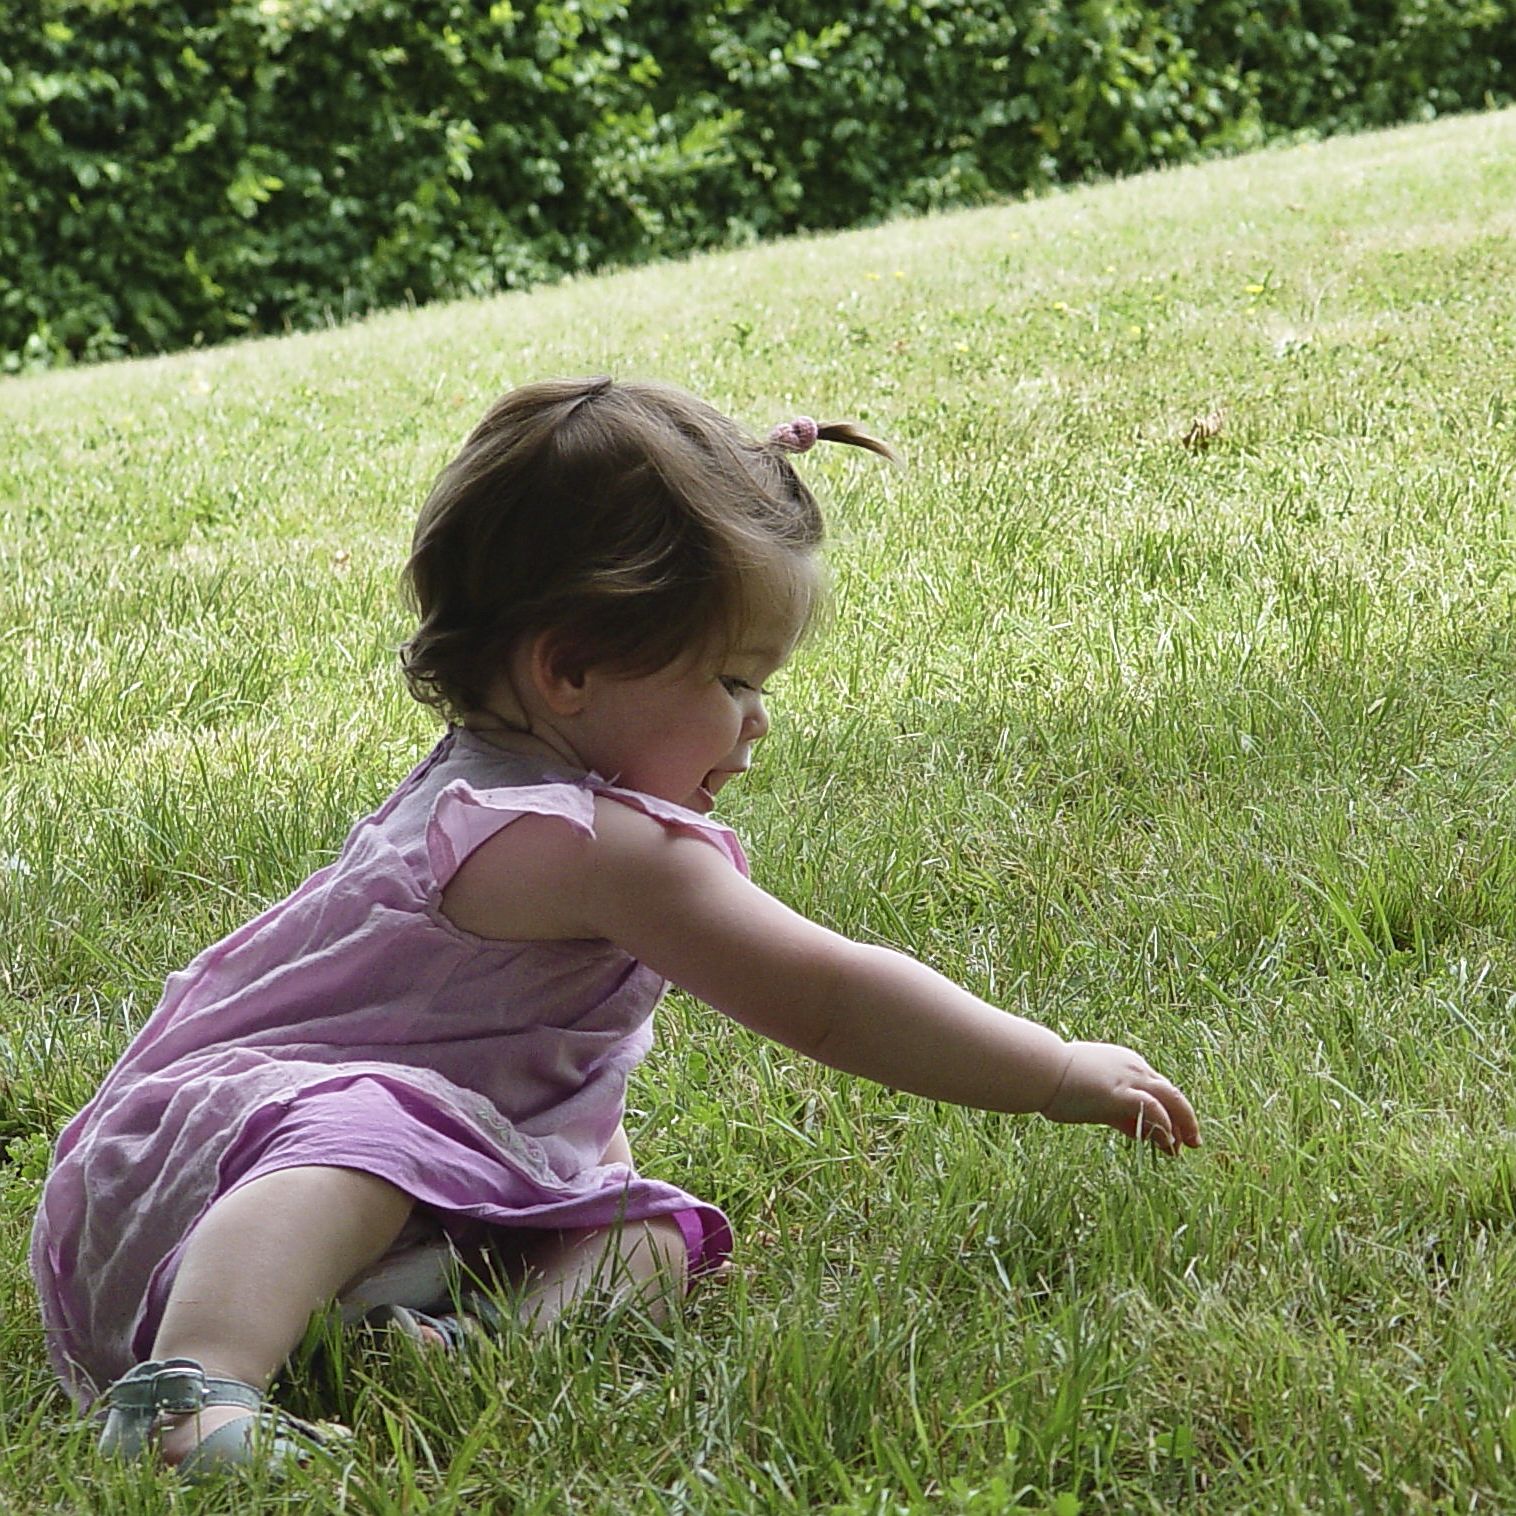 Une toute petite fille habillée en rose qui joue dans l’herbe.